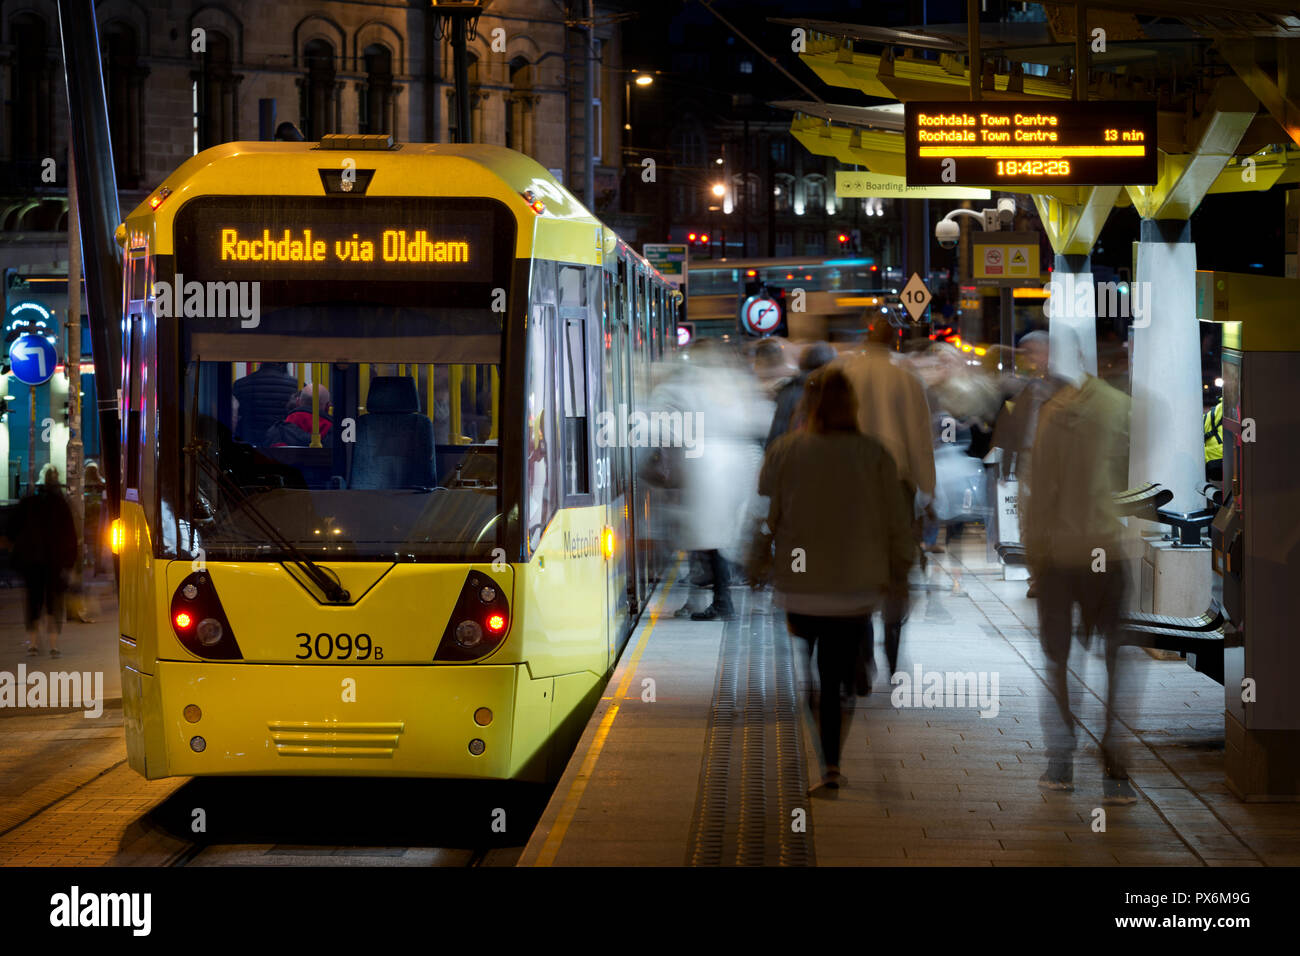 Ein Metrolink tram gebunden für Rochdale über Oldham kommt an der Echange quadratischen Anschlag im Stadtzentrum von Manchester, UK. Stockfoto